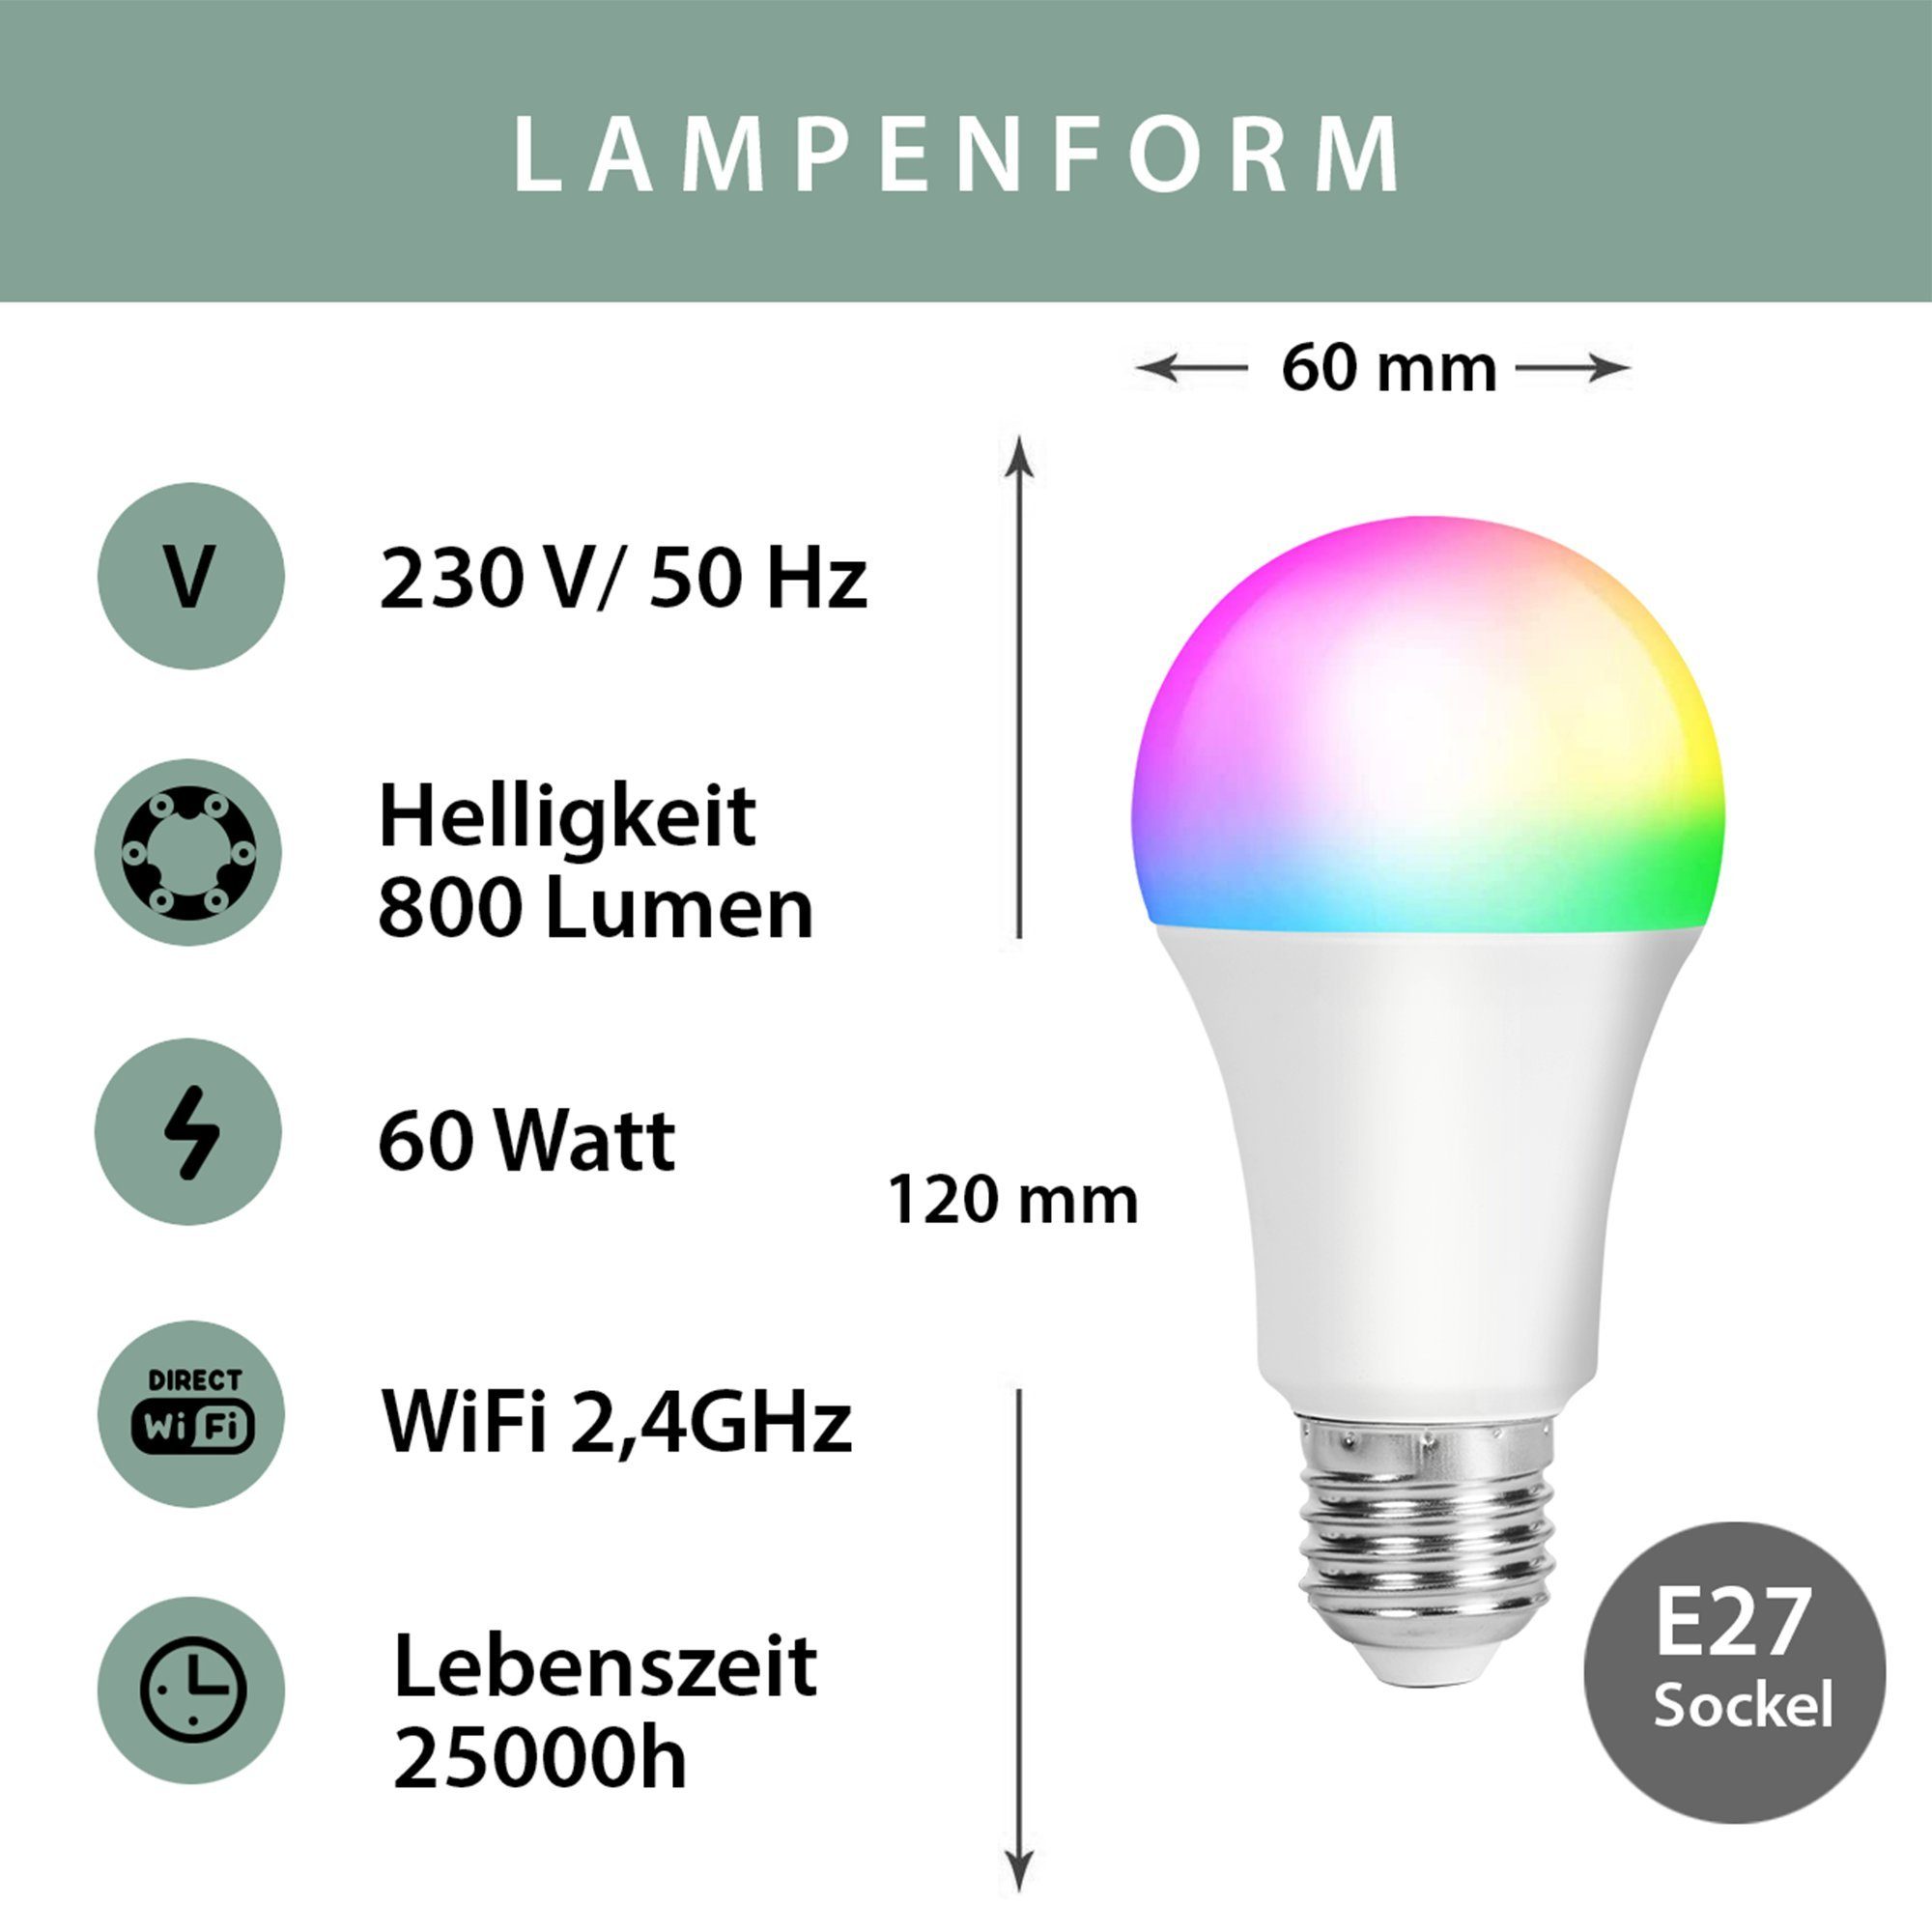 XCOAST SMARTE E27 60W Lampe, 800 Lumen LED-Leuchtmittel, E27, 1 St.,  Warmweiß, Kaltweiß, Bunt, 2700-6500K, SMART HOME LED Lampe, Glühbirne,  WLAN, Sprach-/Appsteuerung, dimmbar